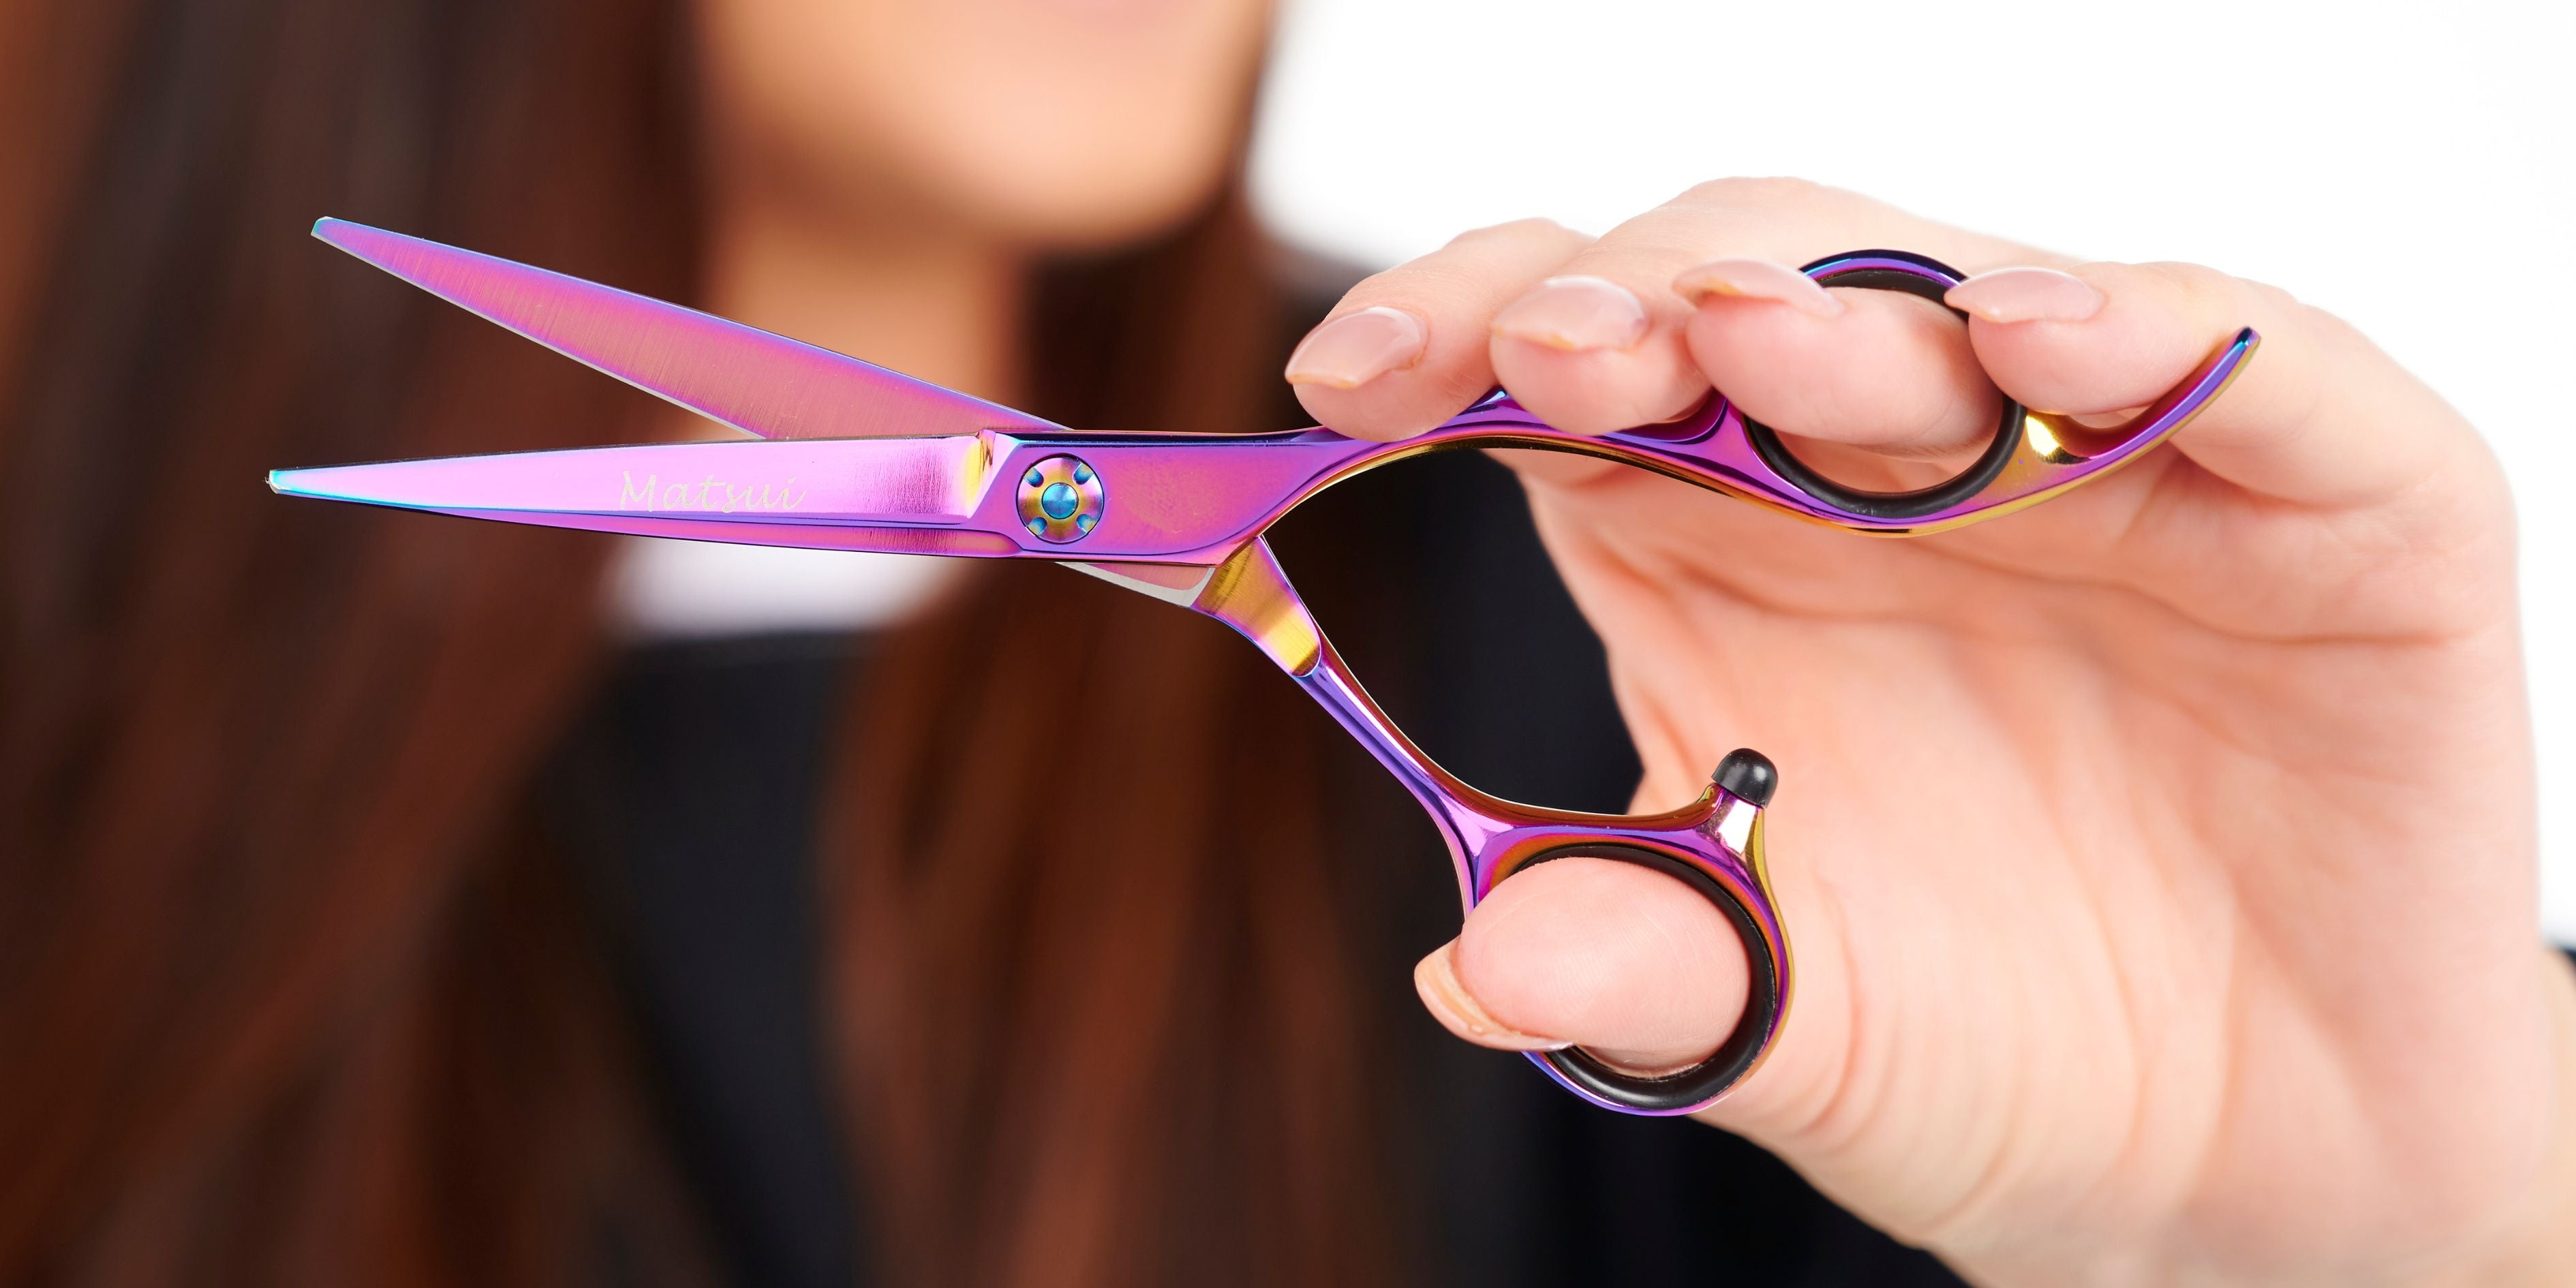 Hairdresser Scissor Sharpening by Clean-Cut